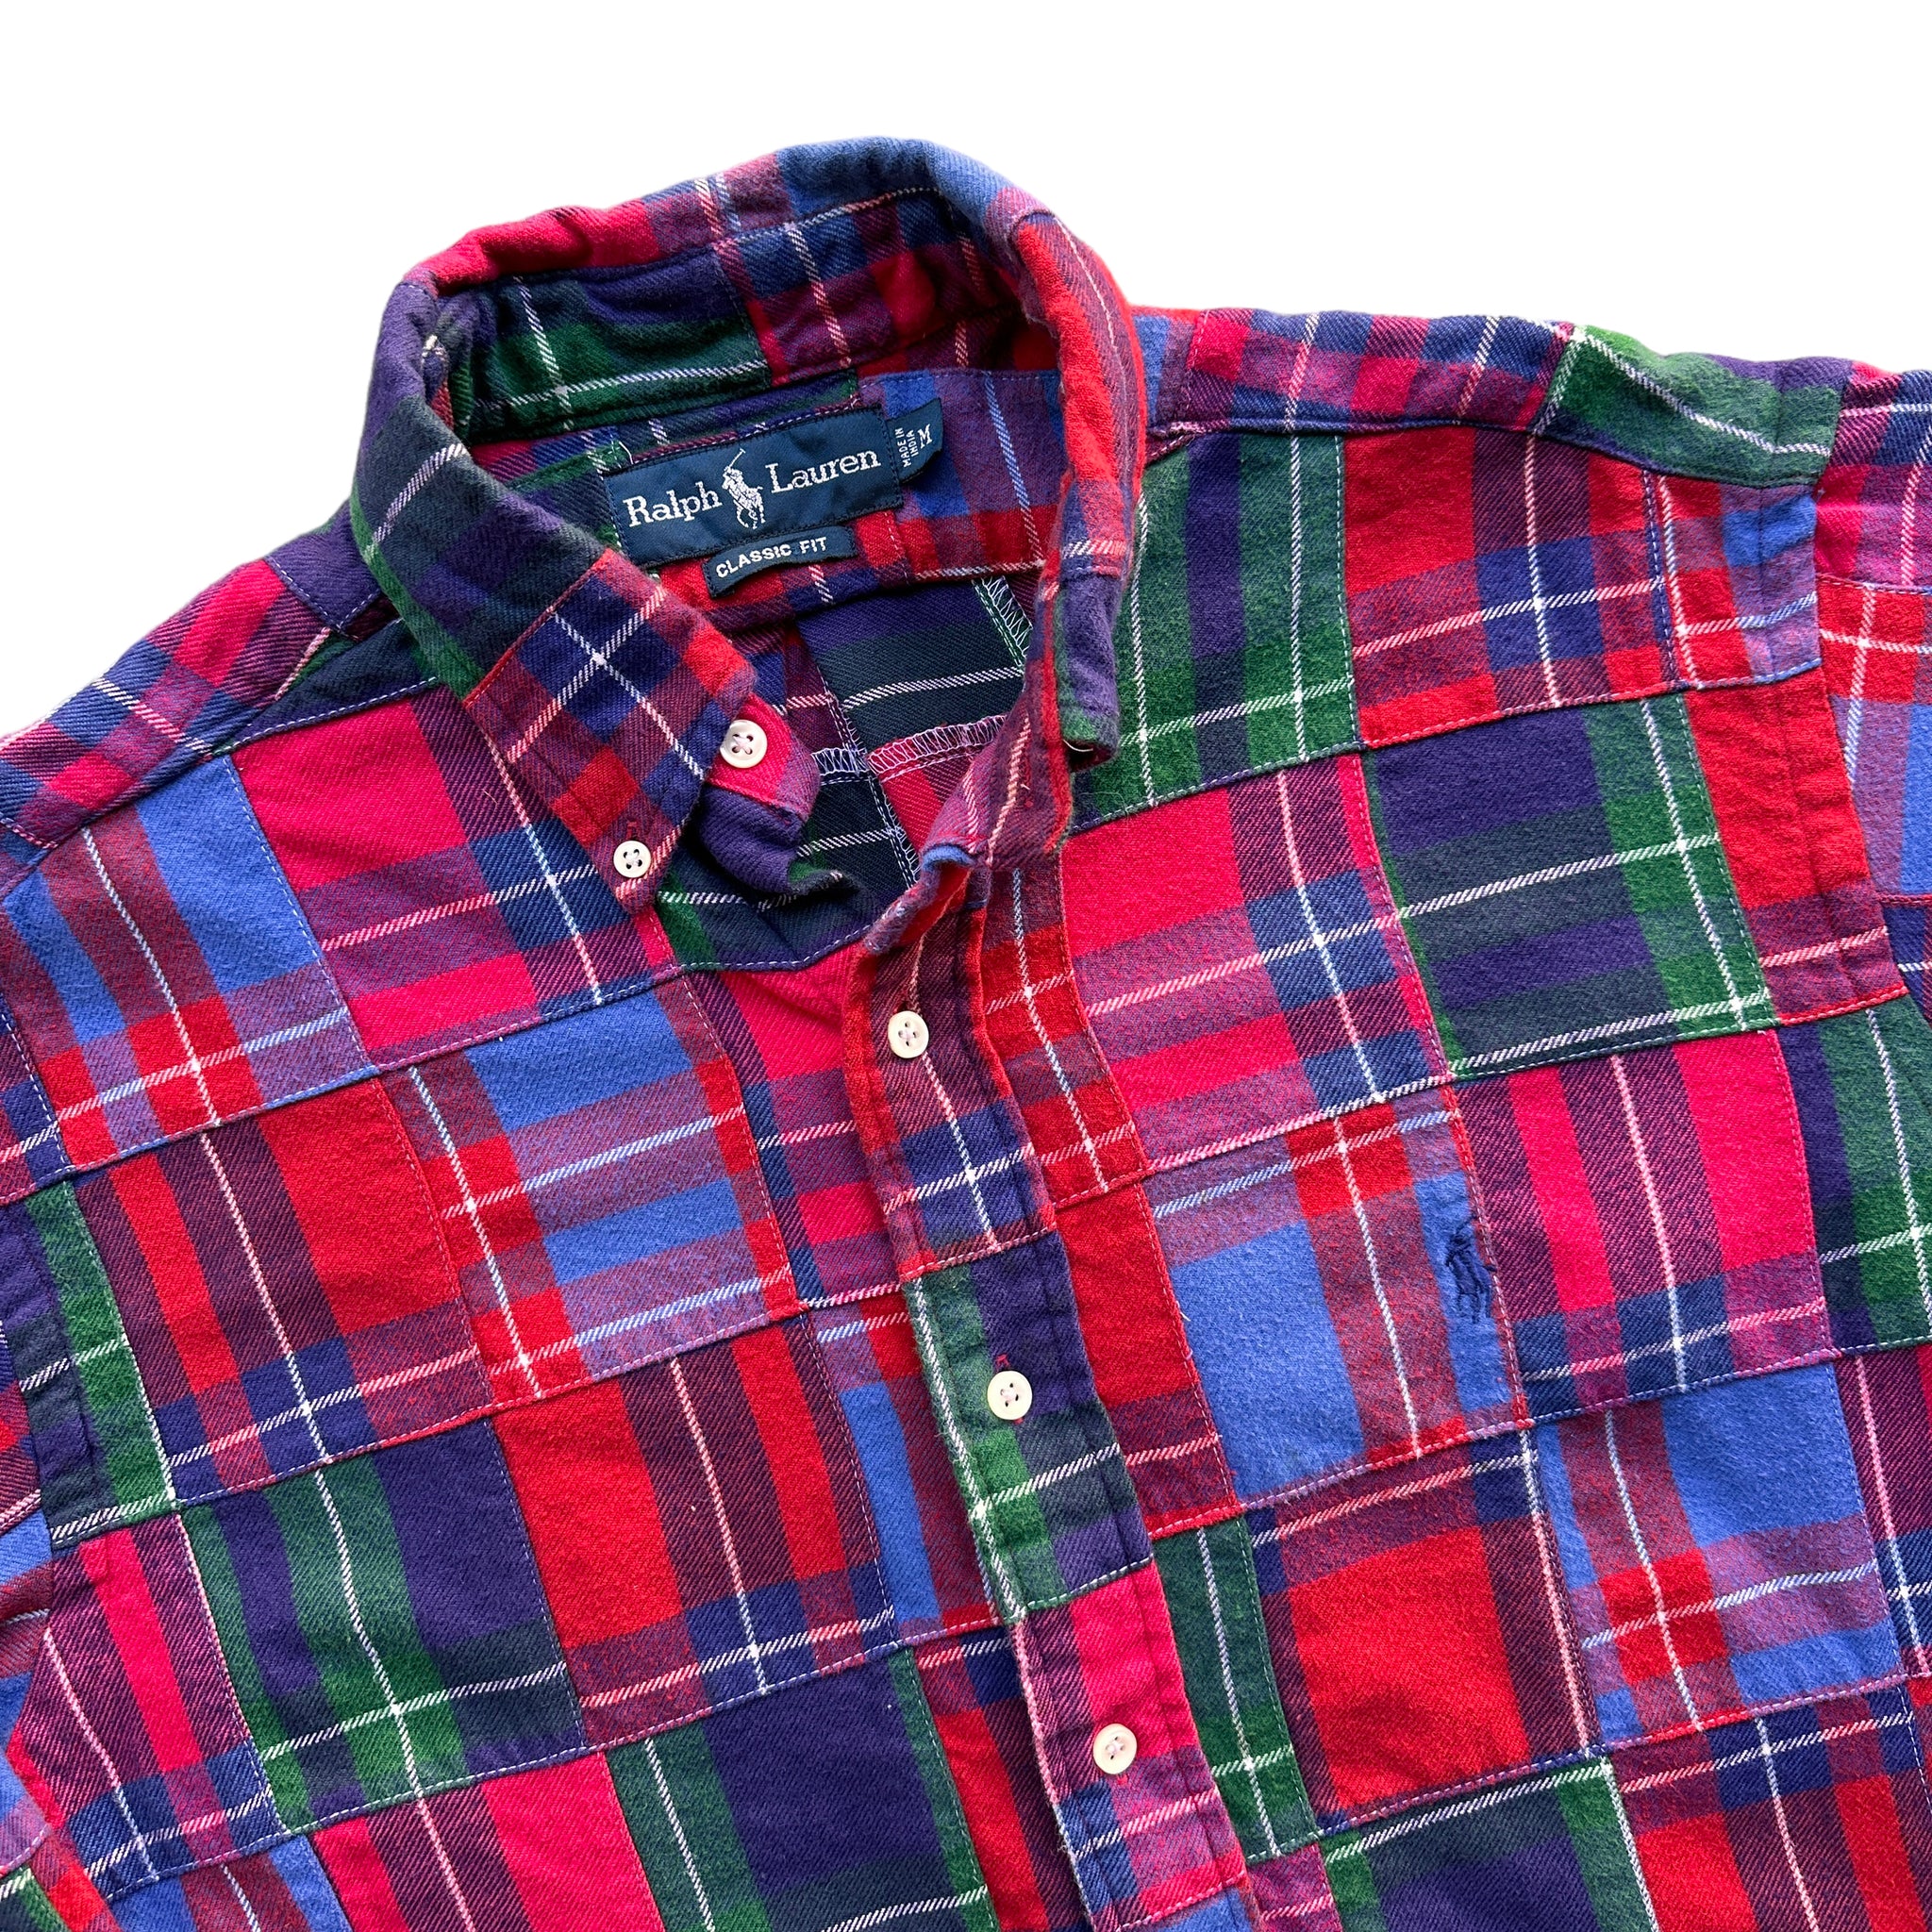 Polo ralph lauren patchwork shirt medium